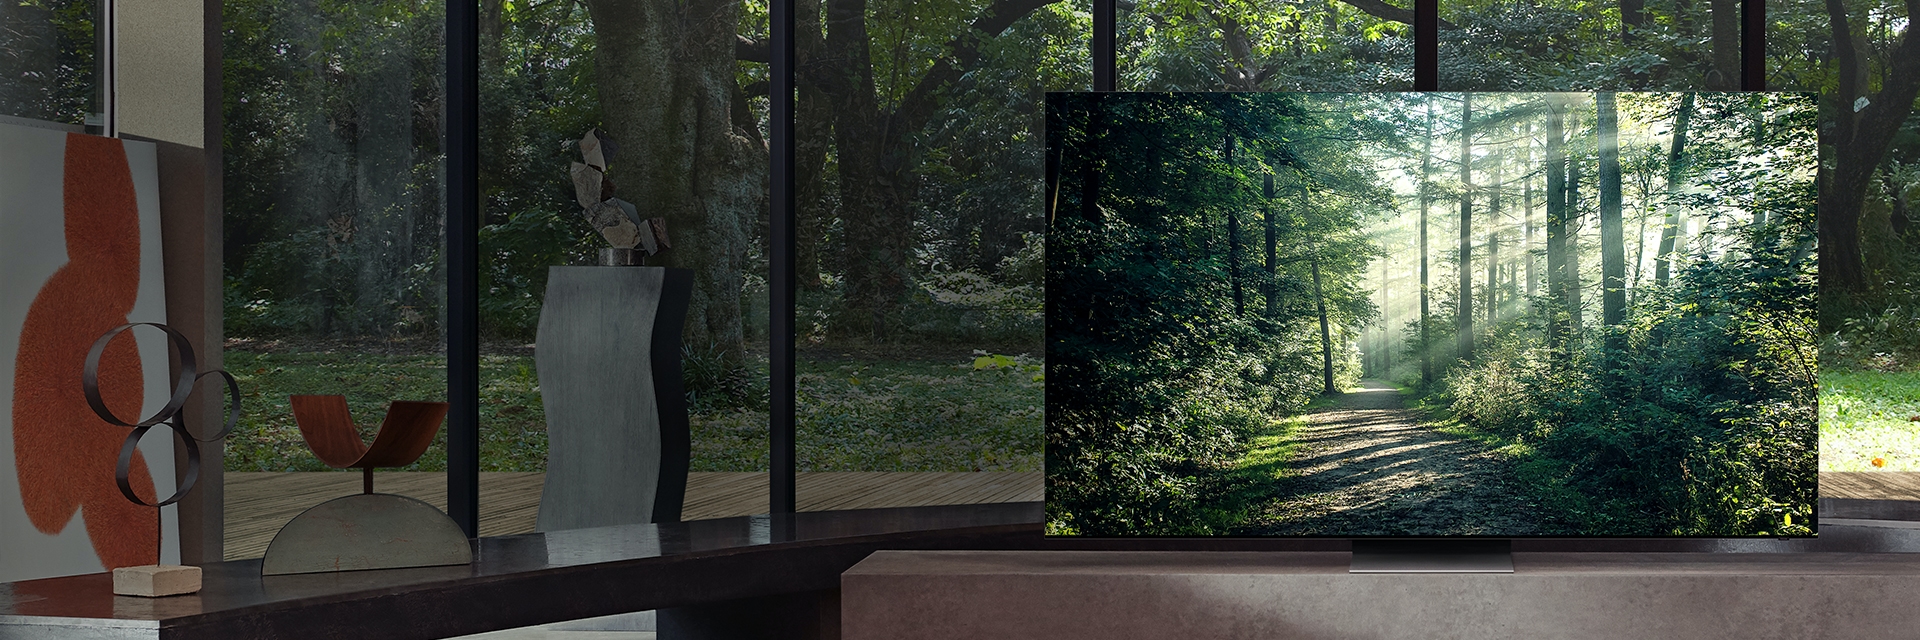 모던한 주택 내부의 바닥에서 천장까지 이어진 유리창 앞에 삼성 Lifestyle TV가 놓여 있습니다. 화면 속 울창한 숲의 이미지는 창밖의 나무와 어우러집니다.